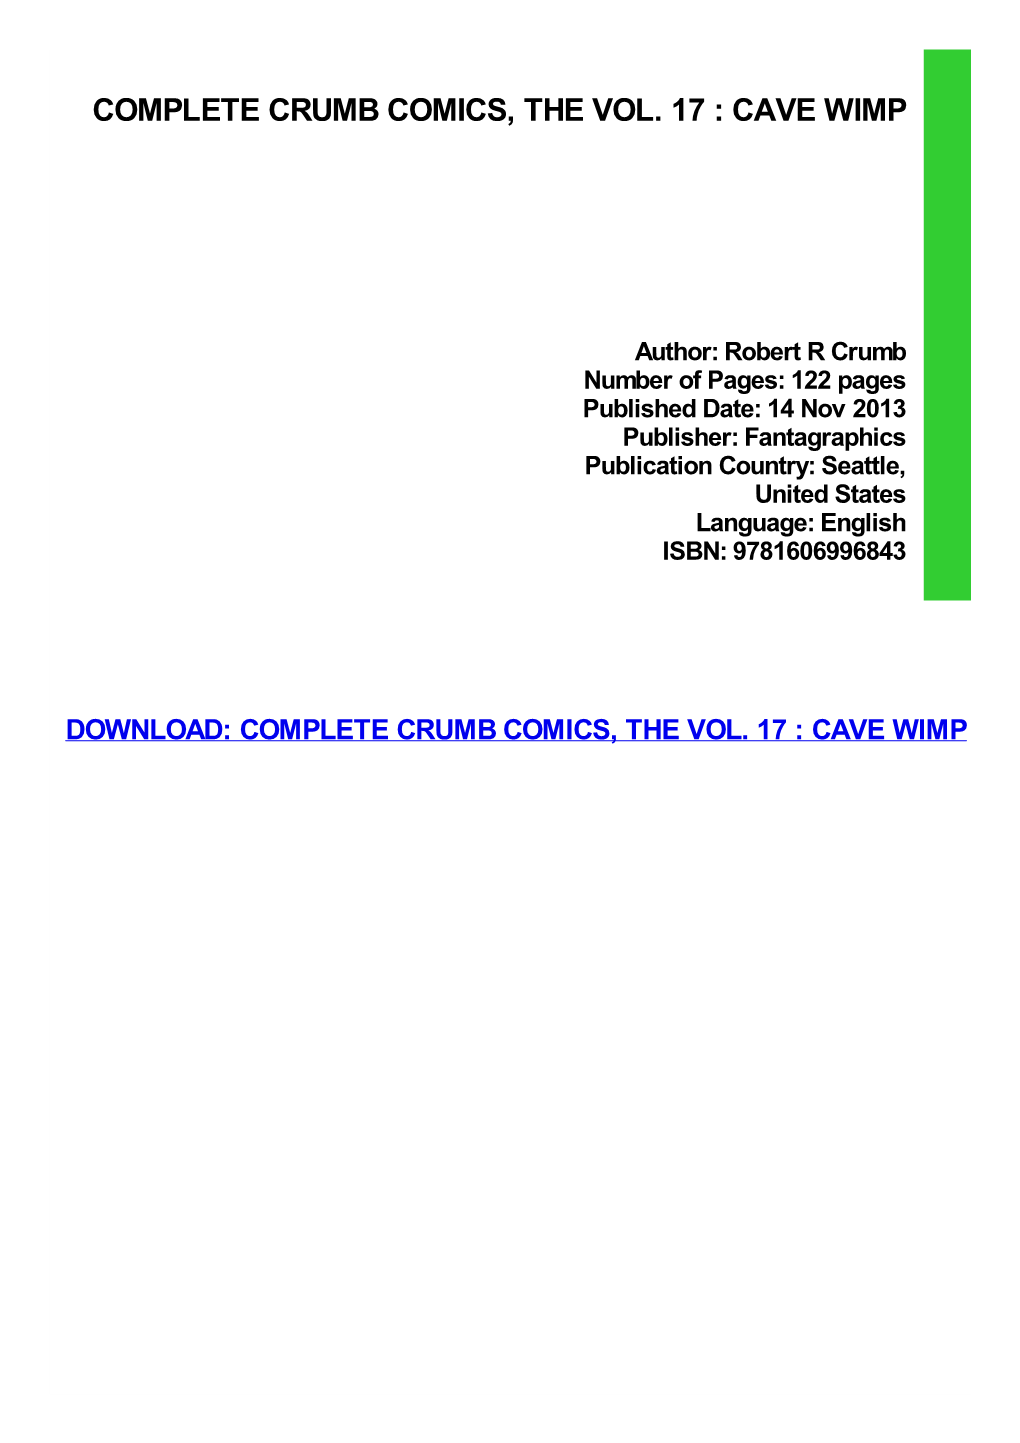 Complete Crumb Comics, the Vol. 17 : Cave Wimp Pdf Free Download